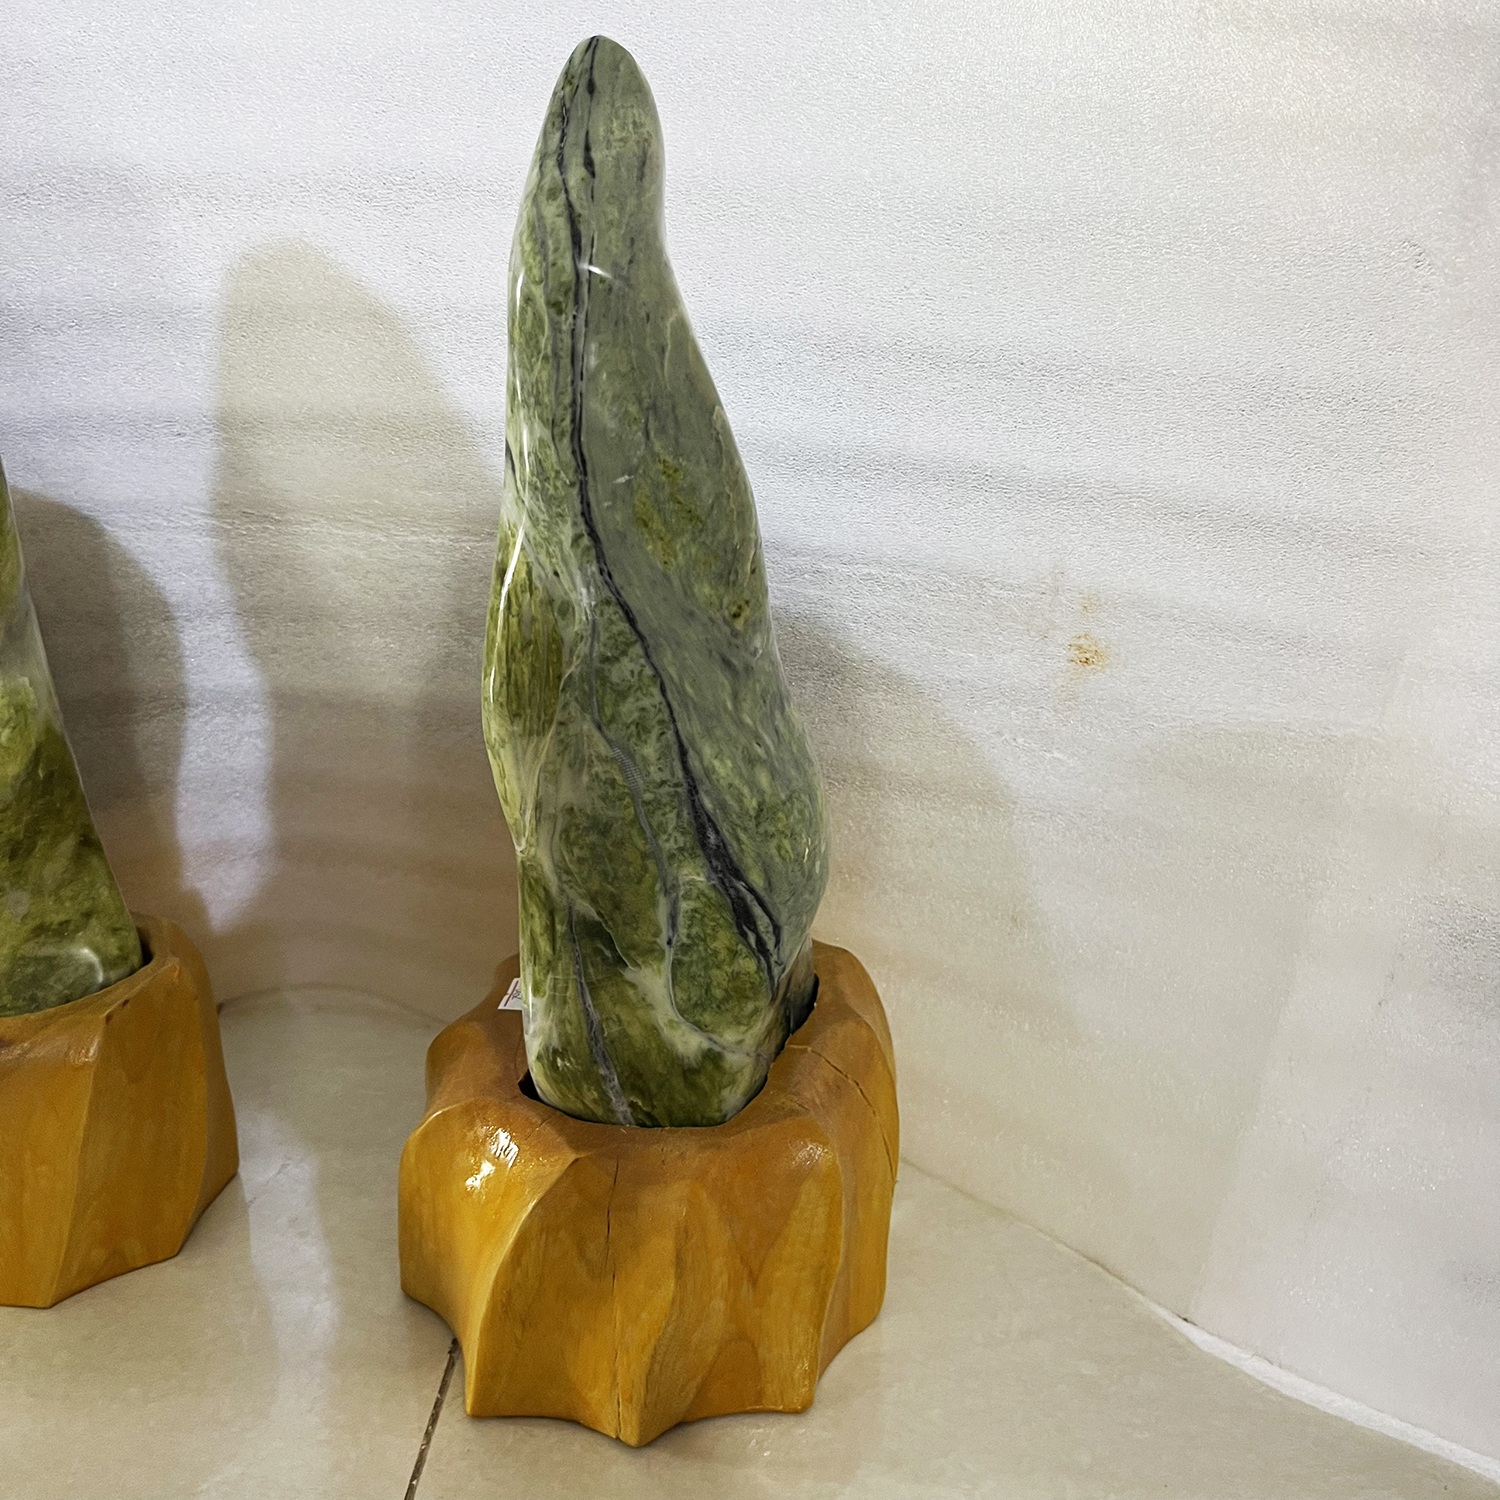 Cây đá để bàn cục ngọc tự nhiên màu vàng nặng 6 kg cao 27 cm cho người mệnh Kim và Thổ